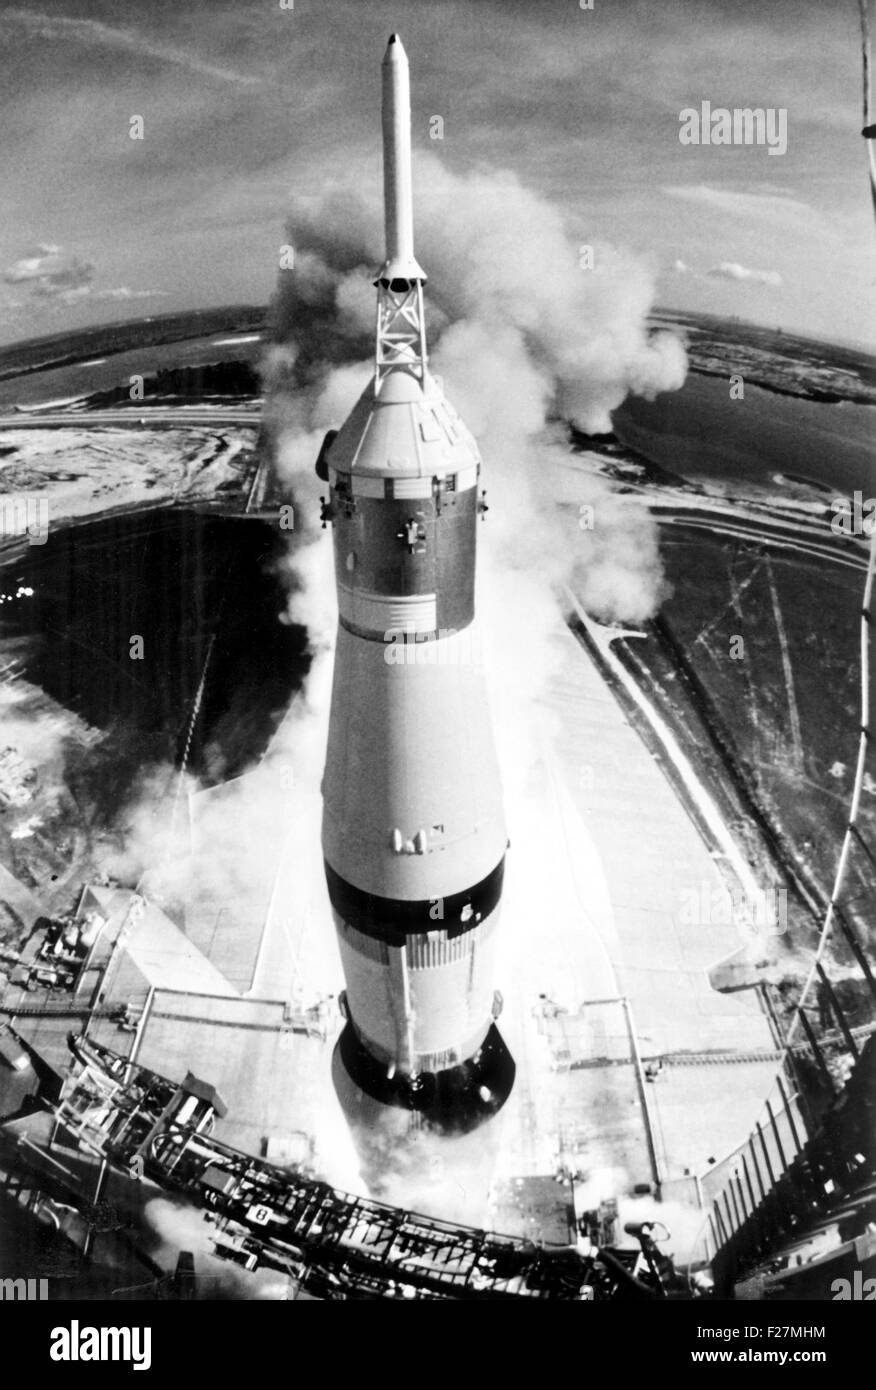 Apollo 11-Mission durchgeführt an der Spitze, die der Saturn V-Rakete vom Kennedy Space Center 16. Juli 1969 in Cape Canaveral, Florida hebt ab. Apollo 11 war der erste Mondmission Landung tragen Astronauten Buzz Aldrin Jr., Neil A. Armstrong und Michael Collins. Stockfoto